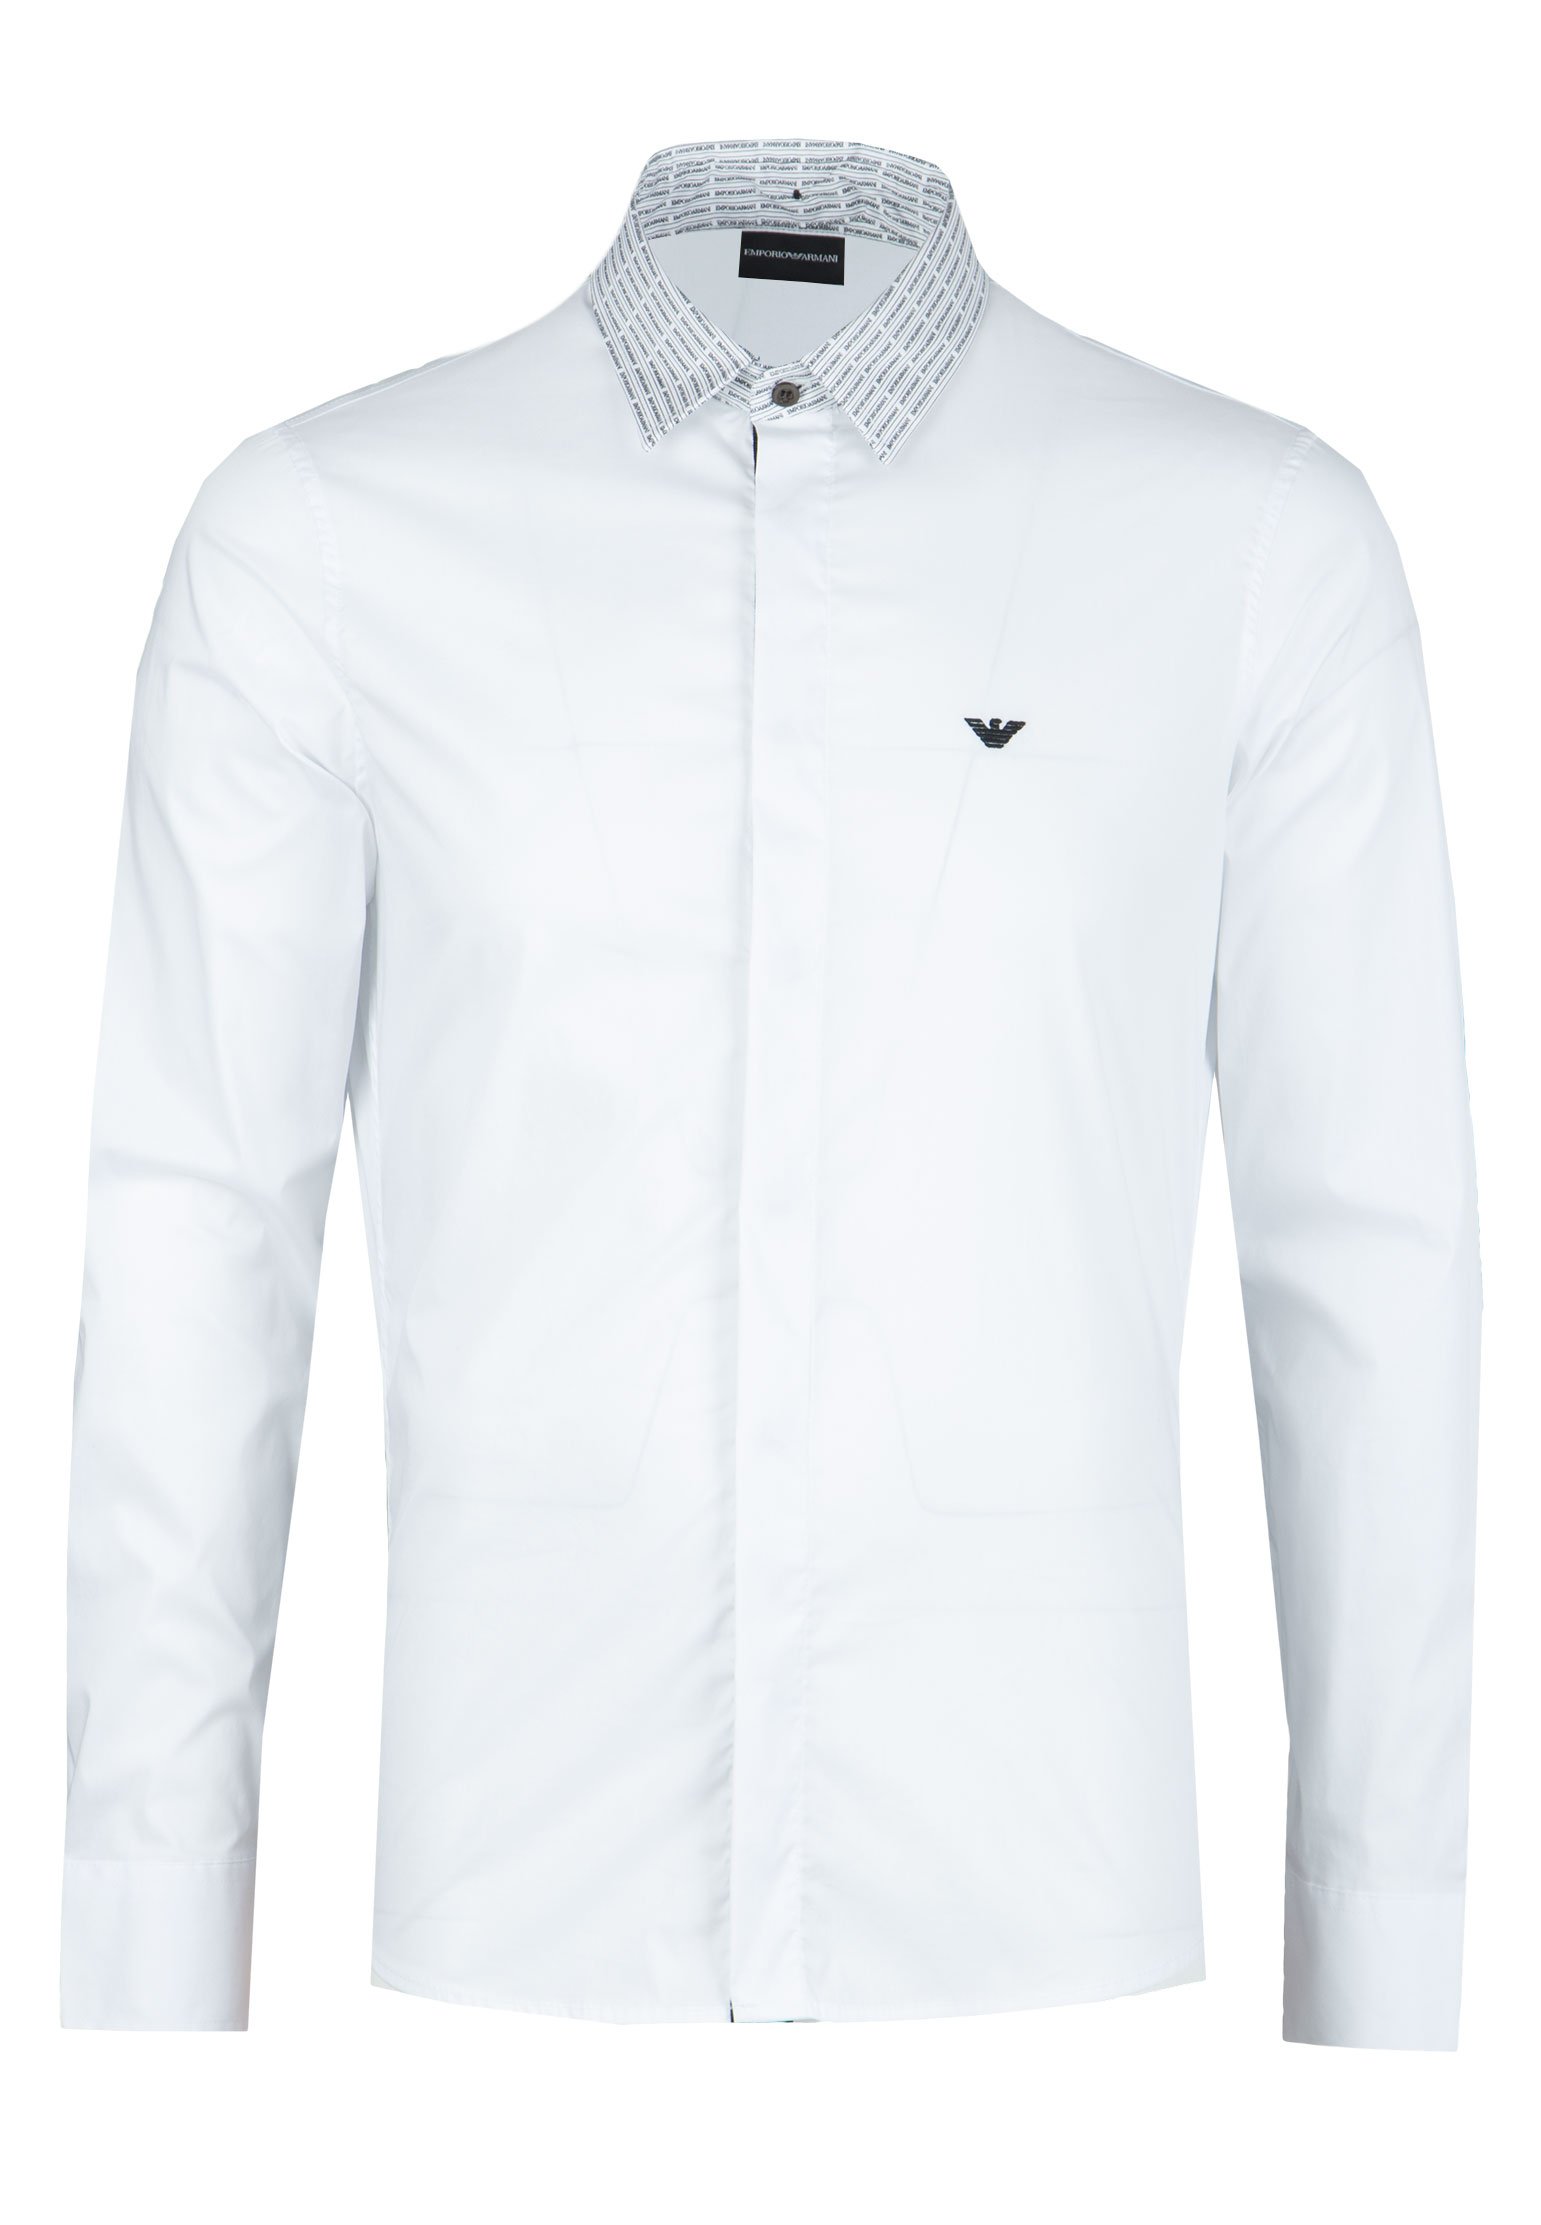 Рубашка мужская Emporio Armani 105658 белая 2XL